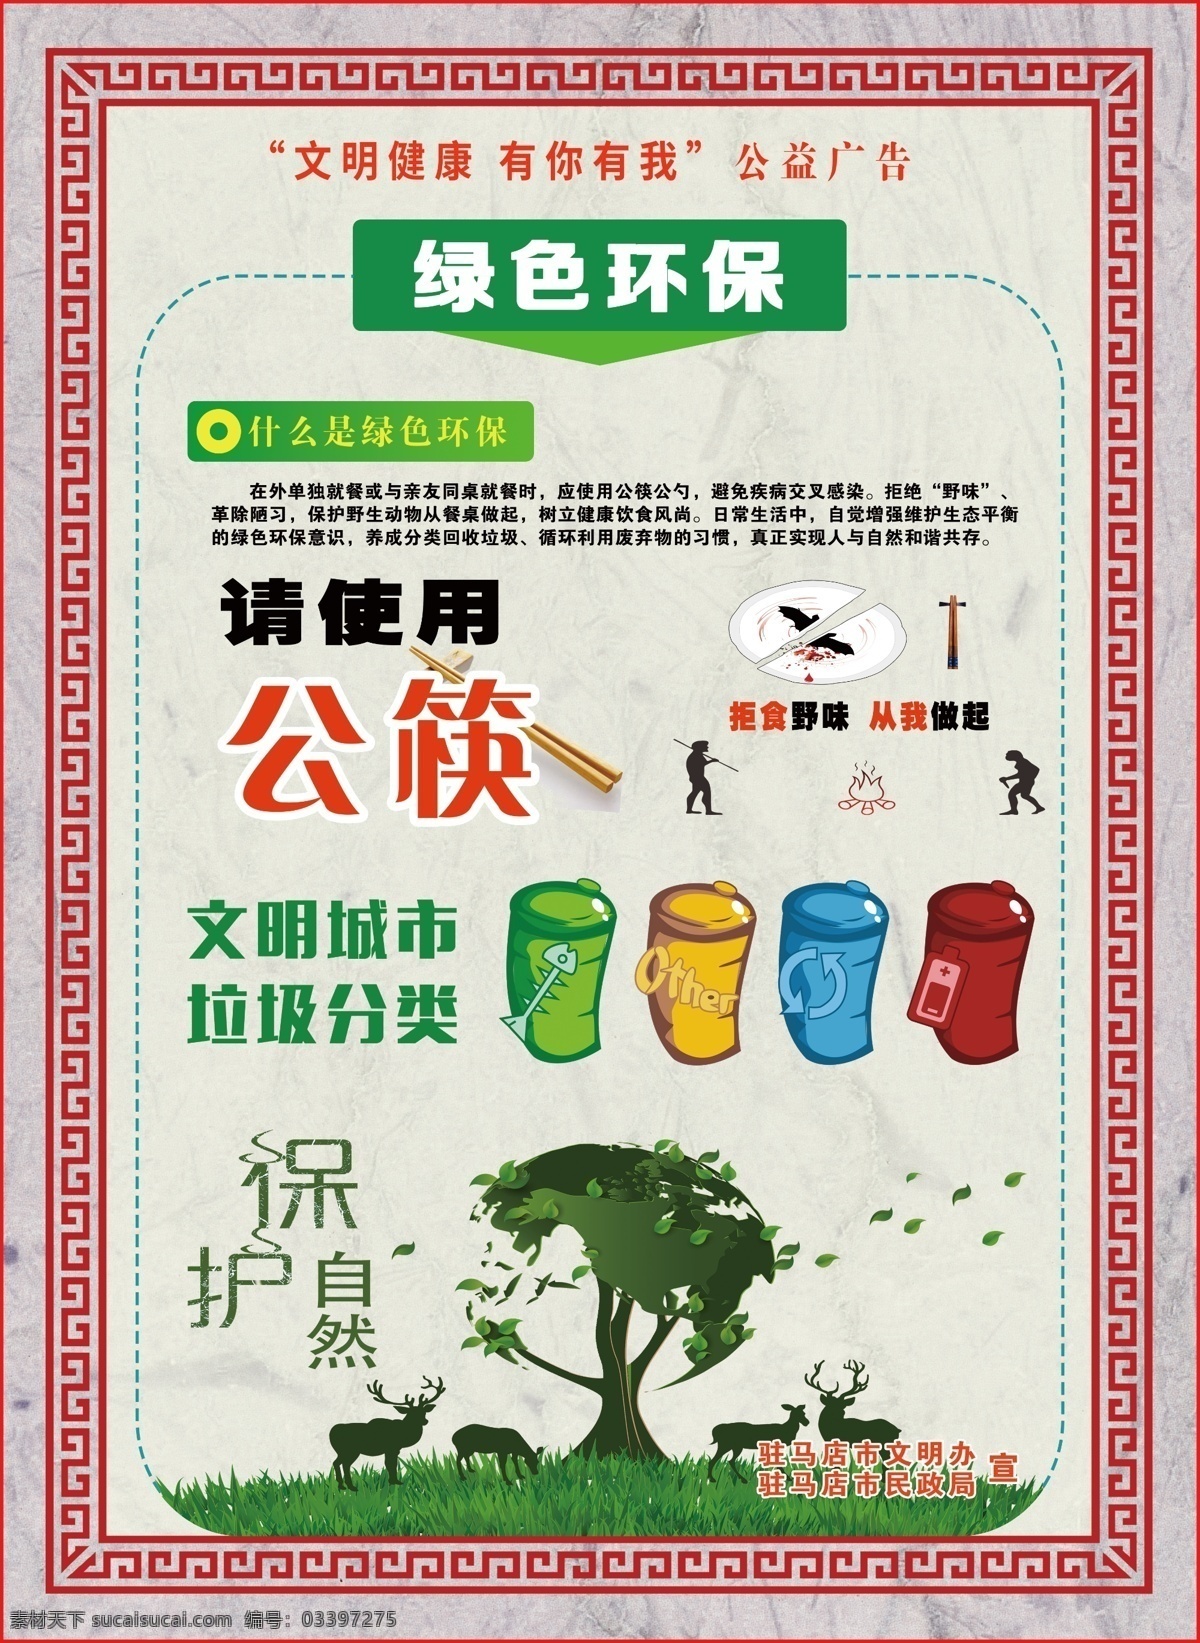 绿色环保 公益 广告 公益广告 使用公筷 保护自然 文明城市 垃圾分类 拒食野味